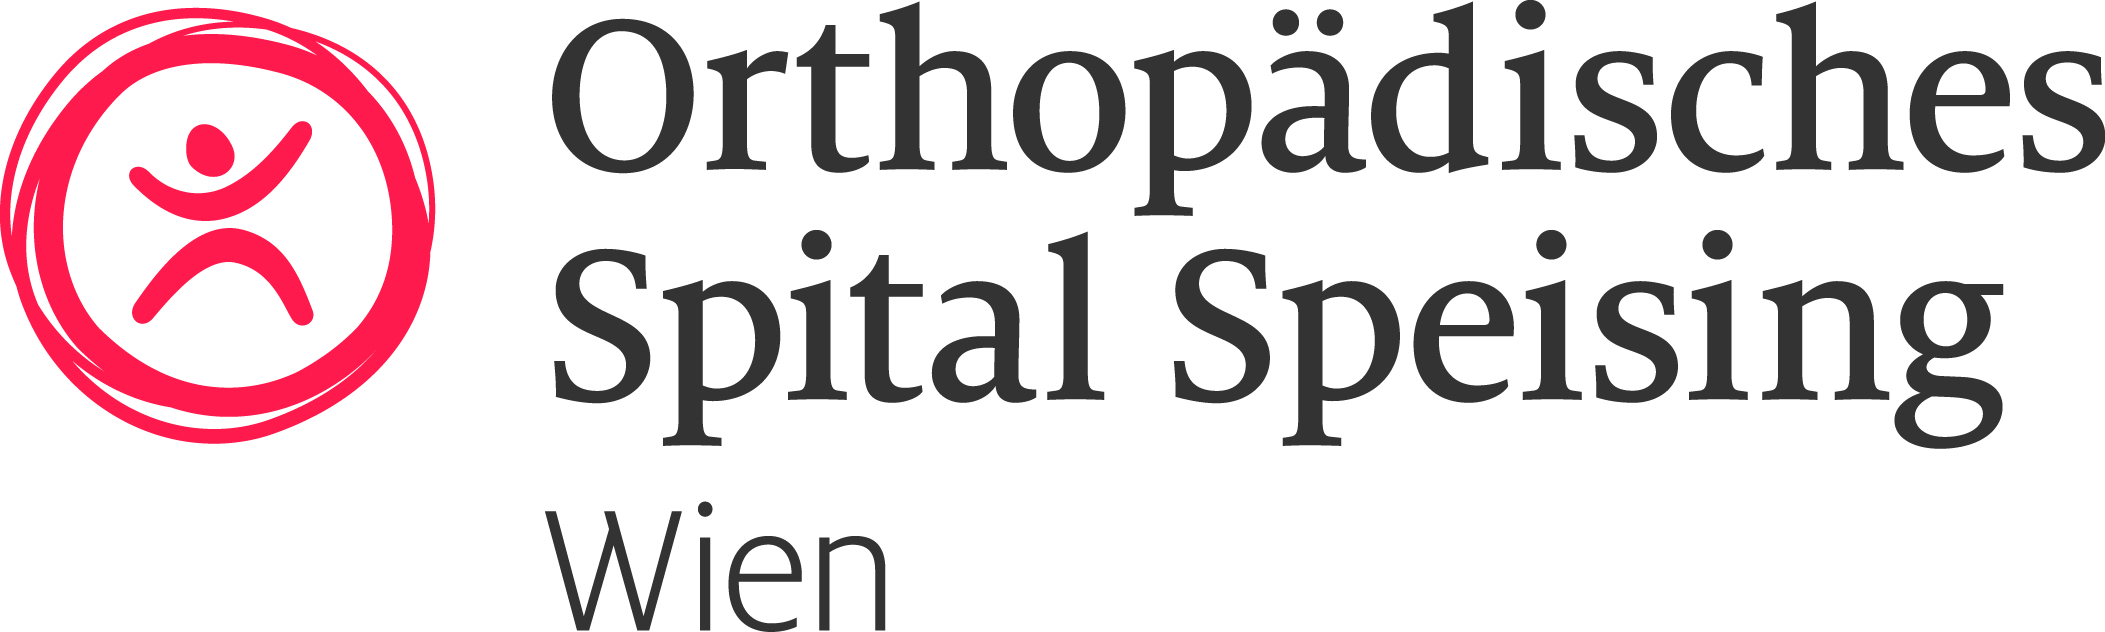 Logo Orthopädisches Spital Speising